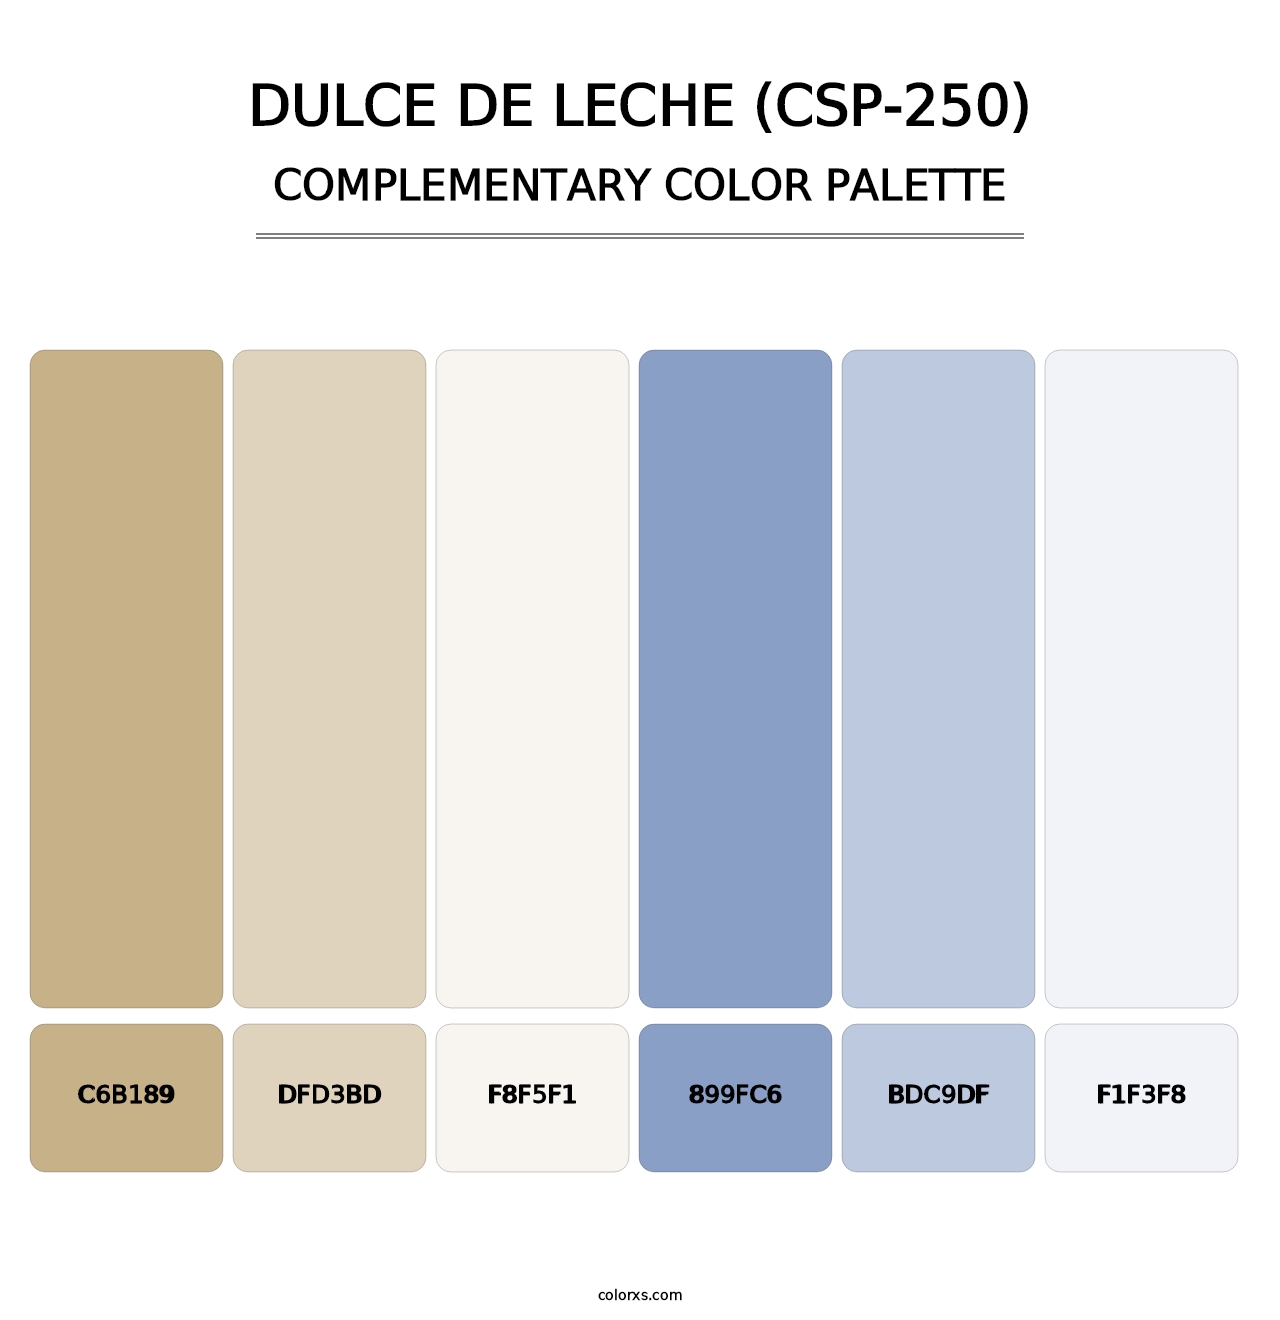 Dulce de Leche (CSP-250) - Complementary Color Palette